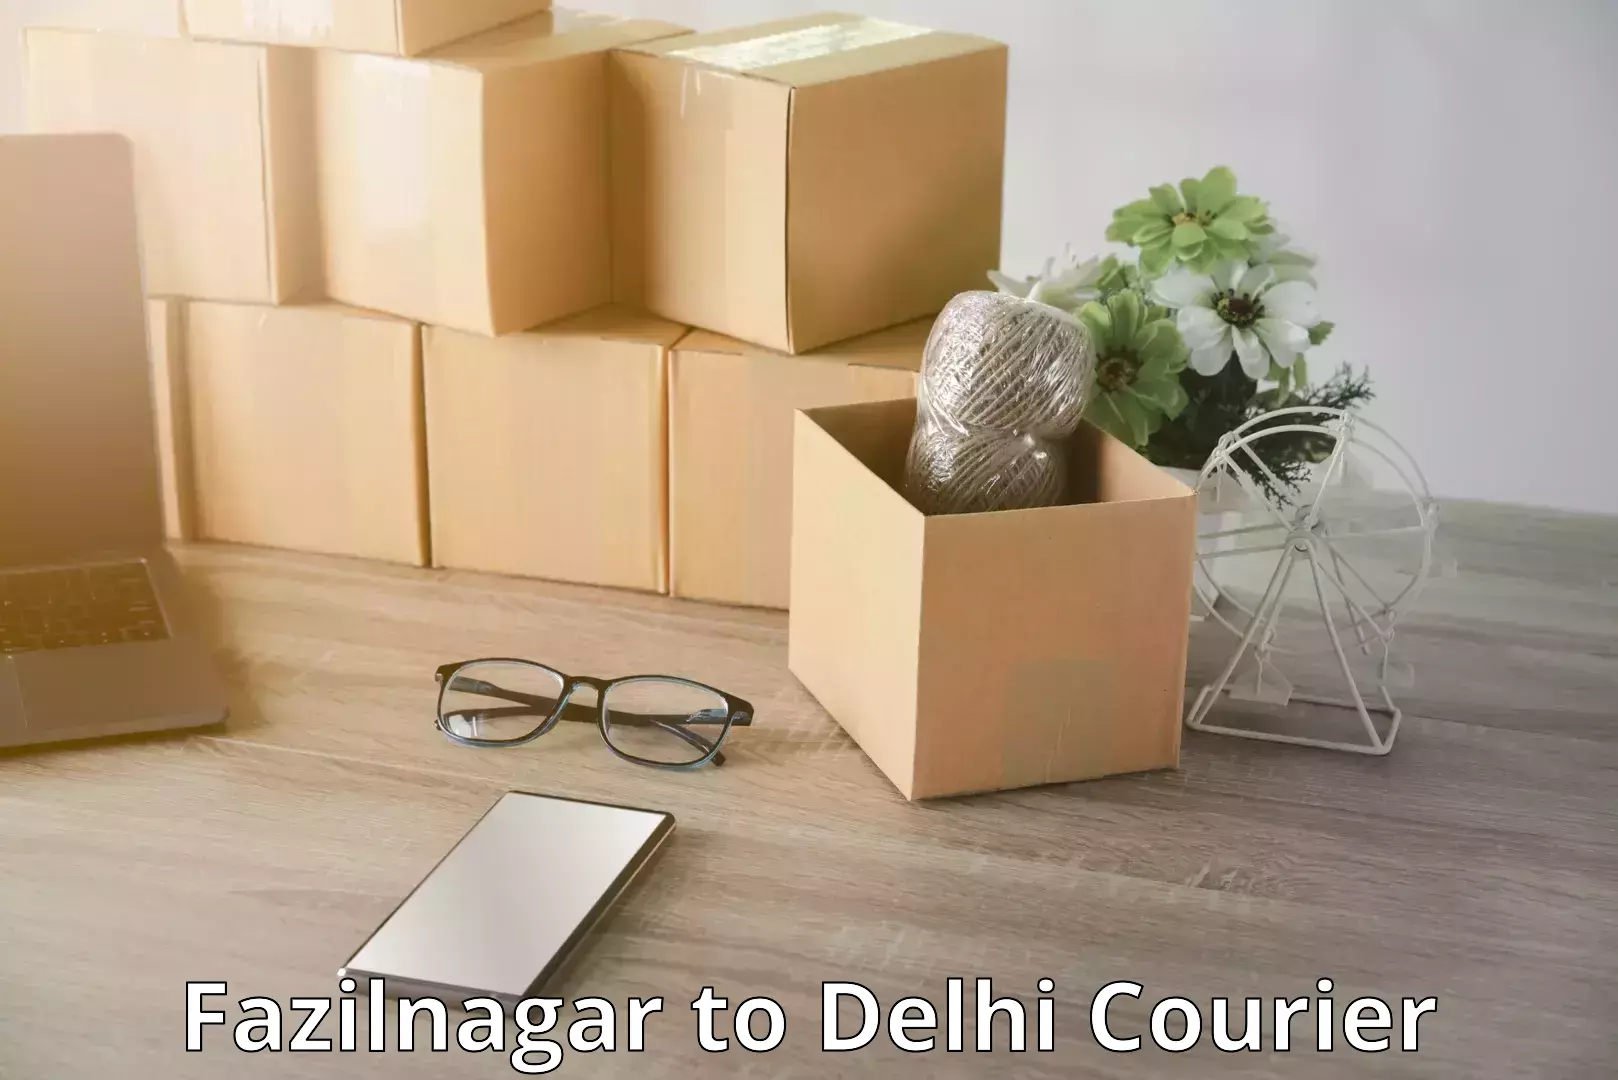 Baggage transport innovation Fazilnagar to Delhi